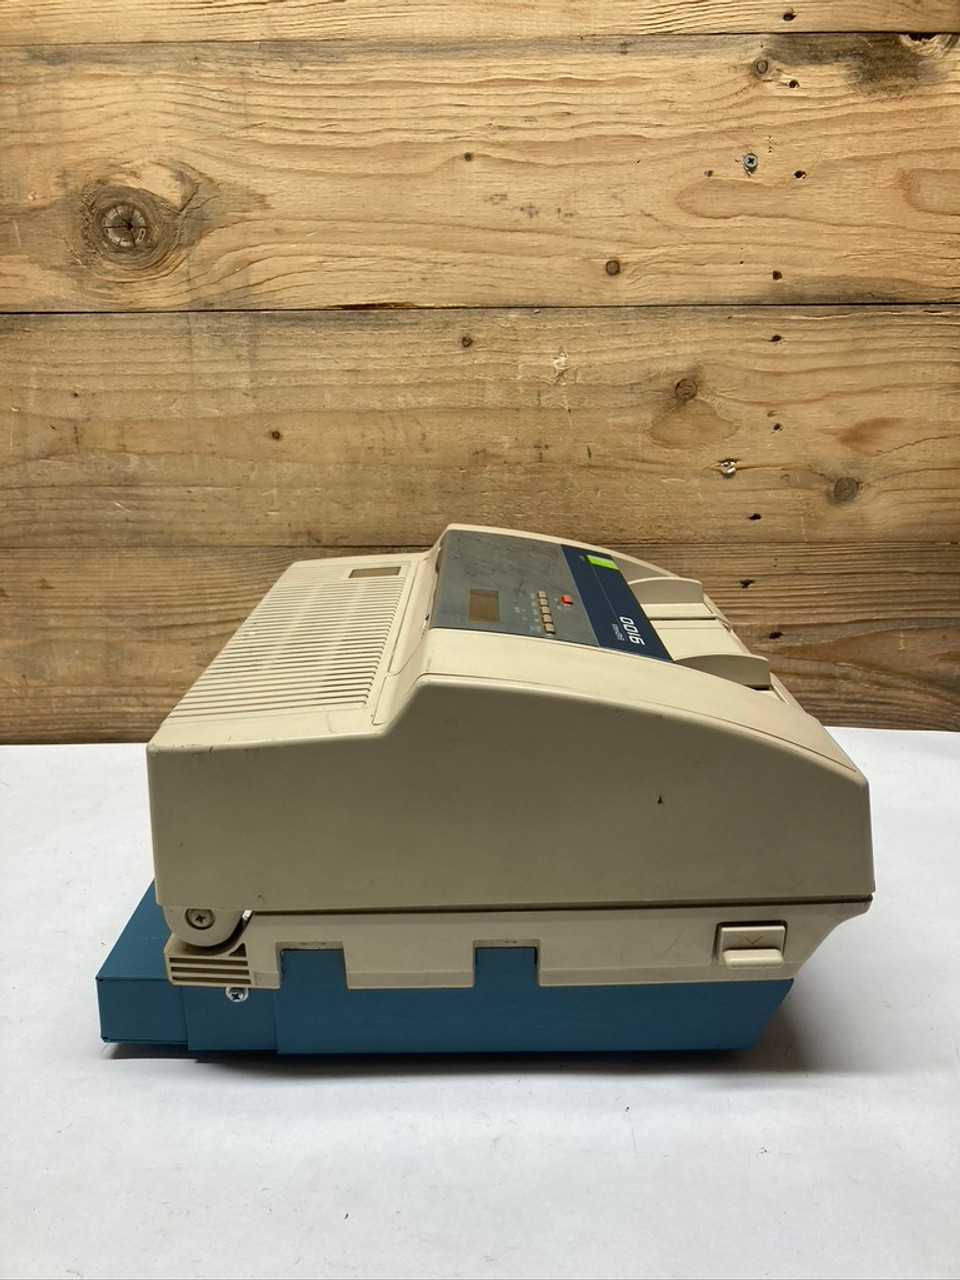 TSP Easy-Fax 9100 Fax Machine